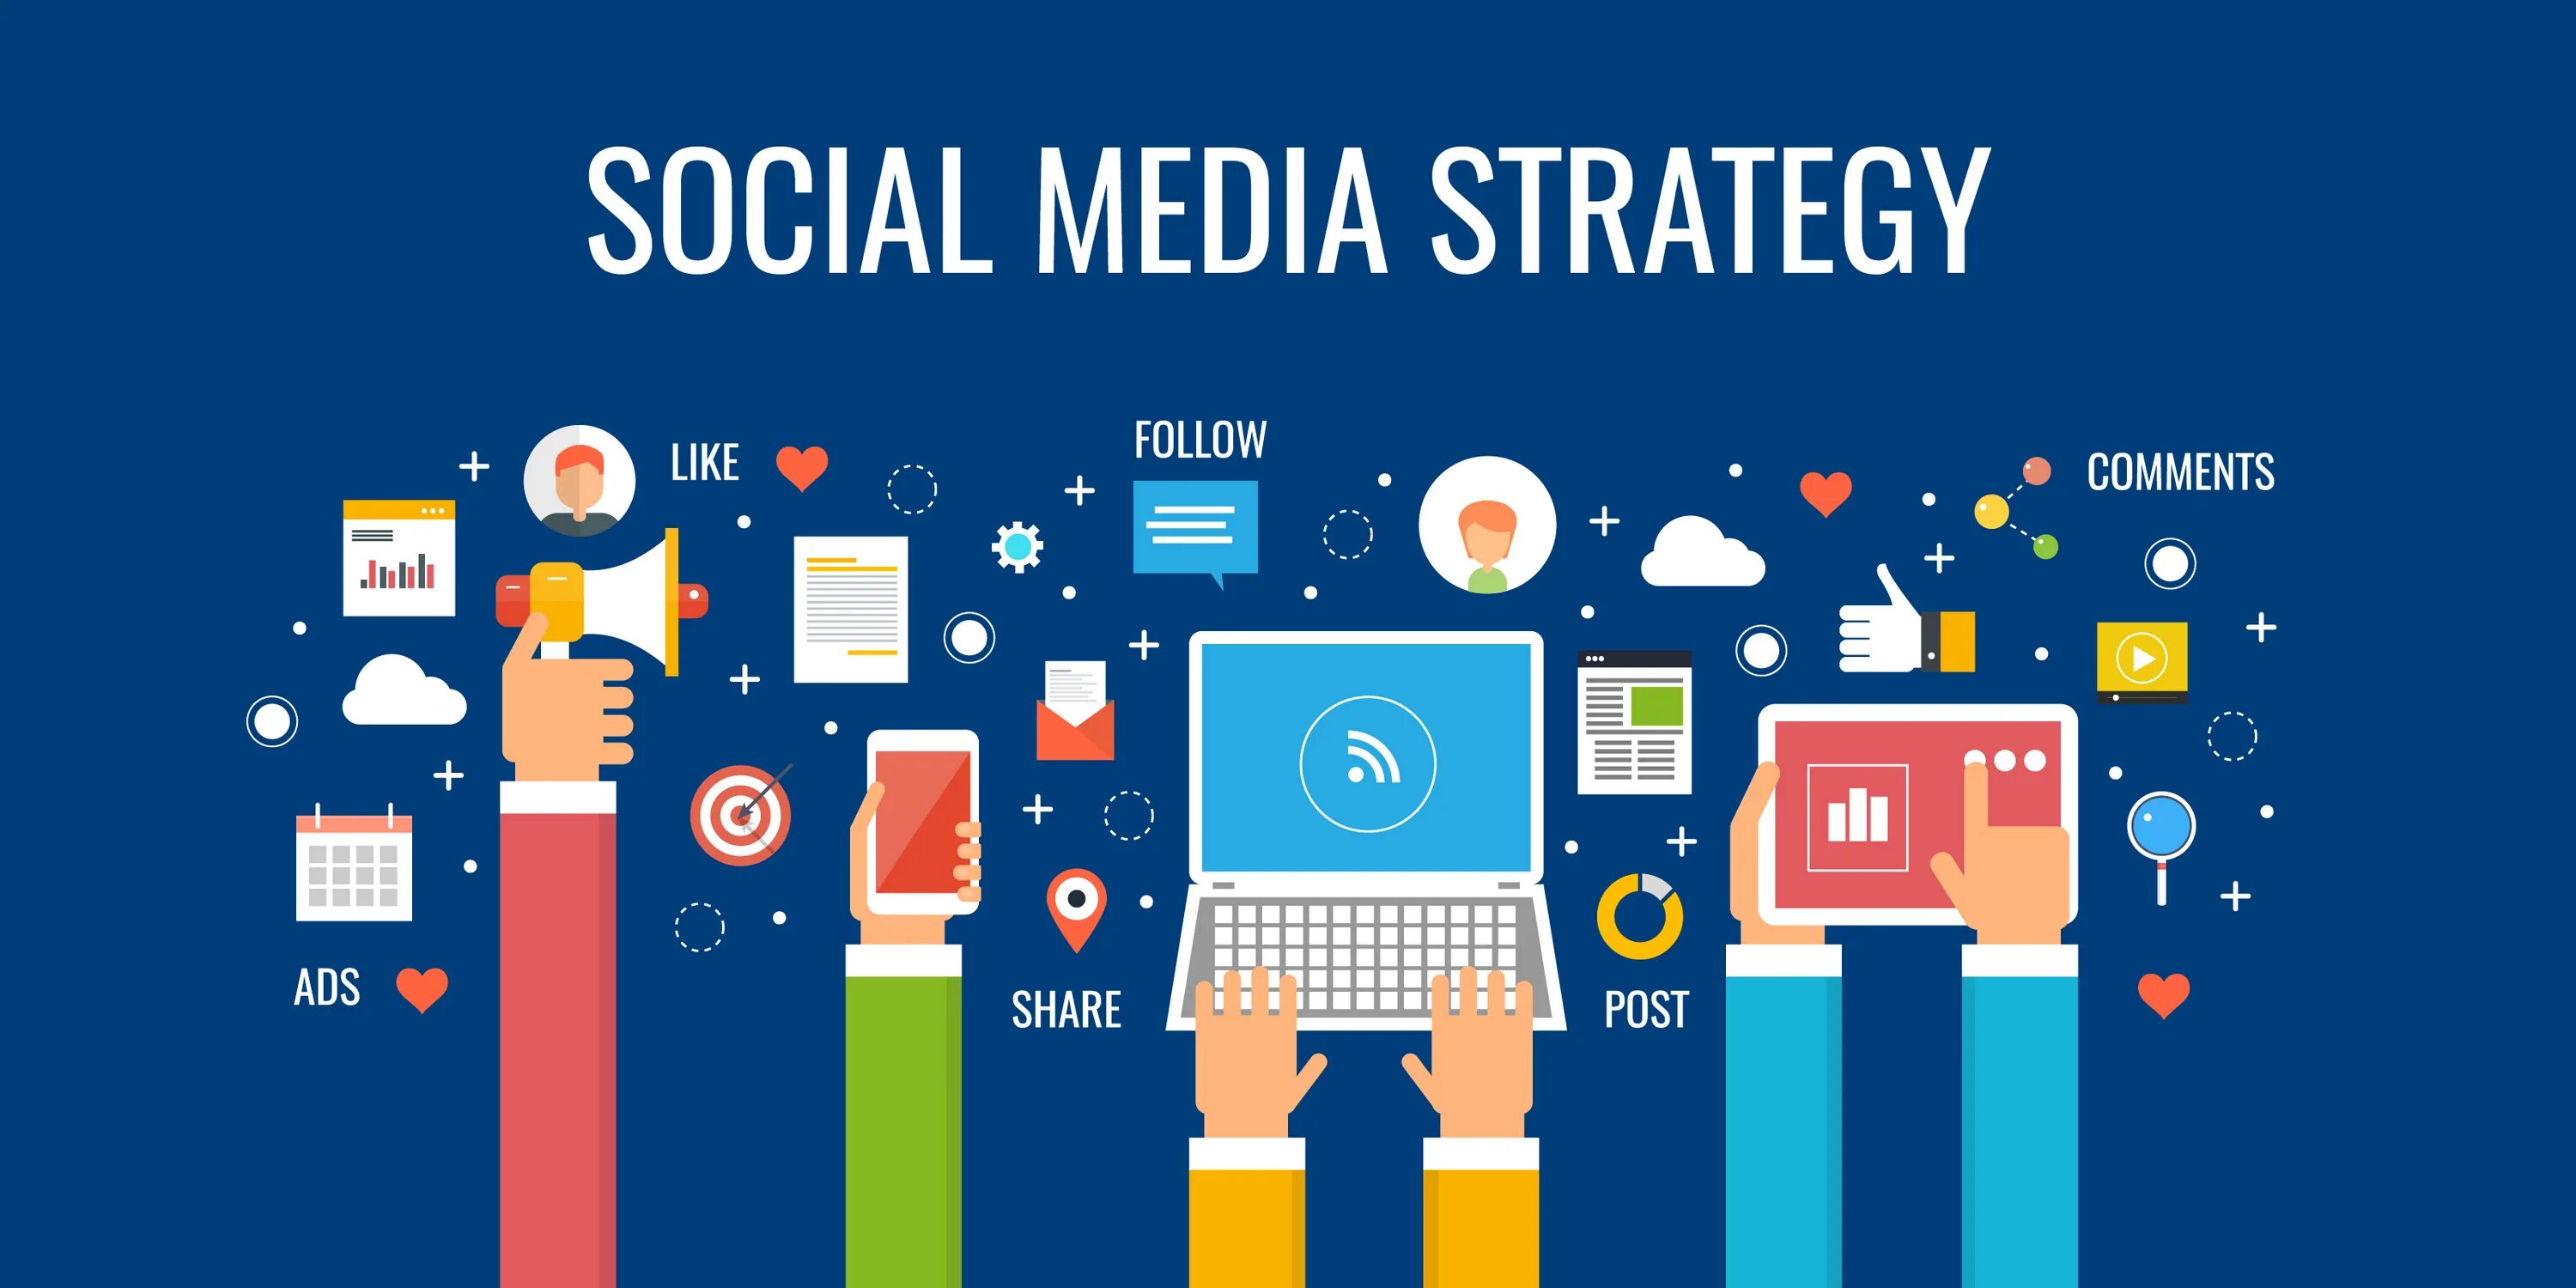 Smm shop. Smm стратегия. Соцсети стратегия. Стратегия сошиал Медиа маркетинга. Social Media.